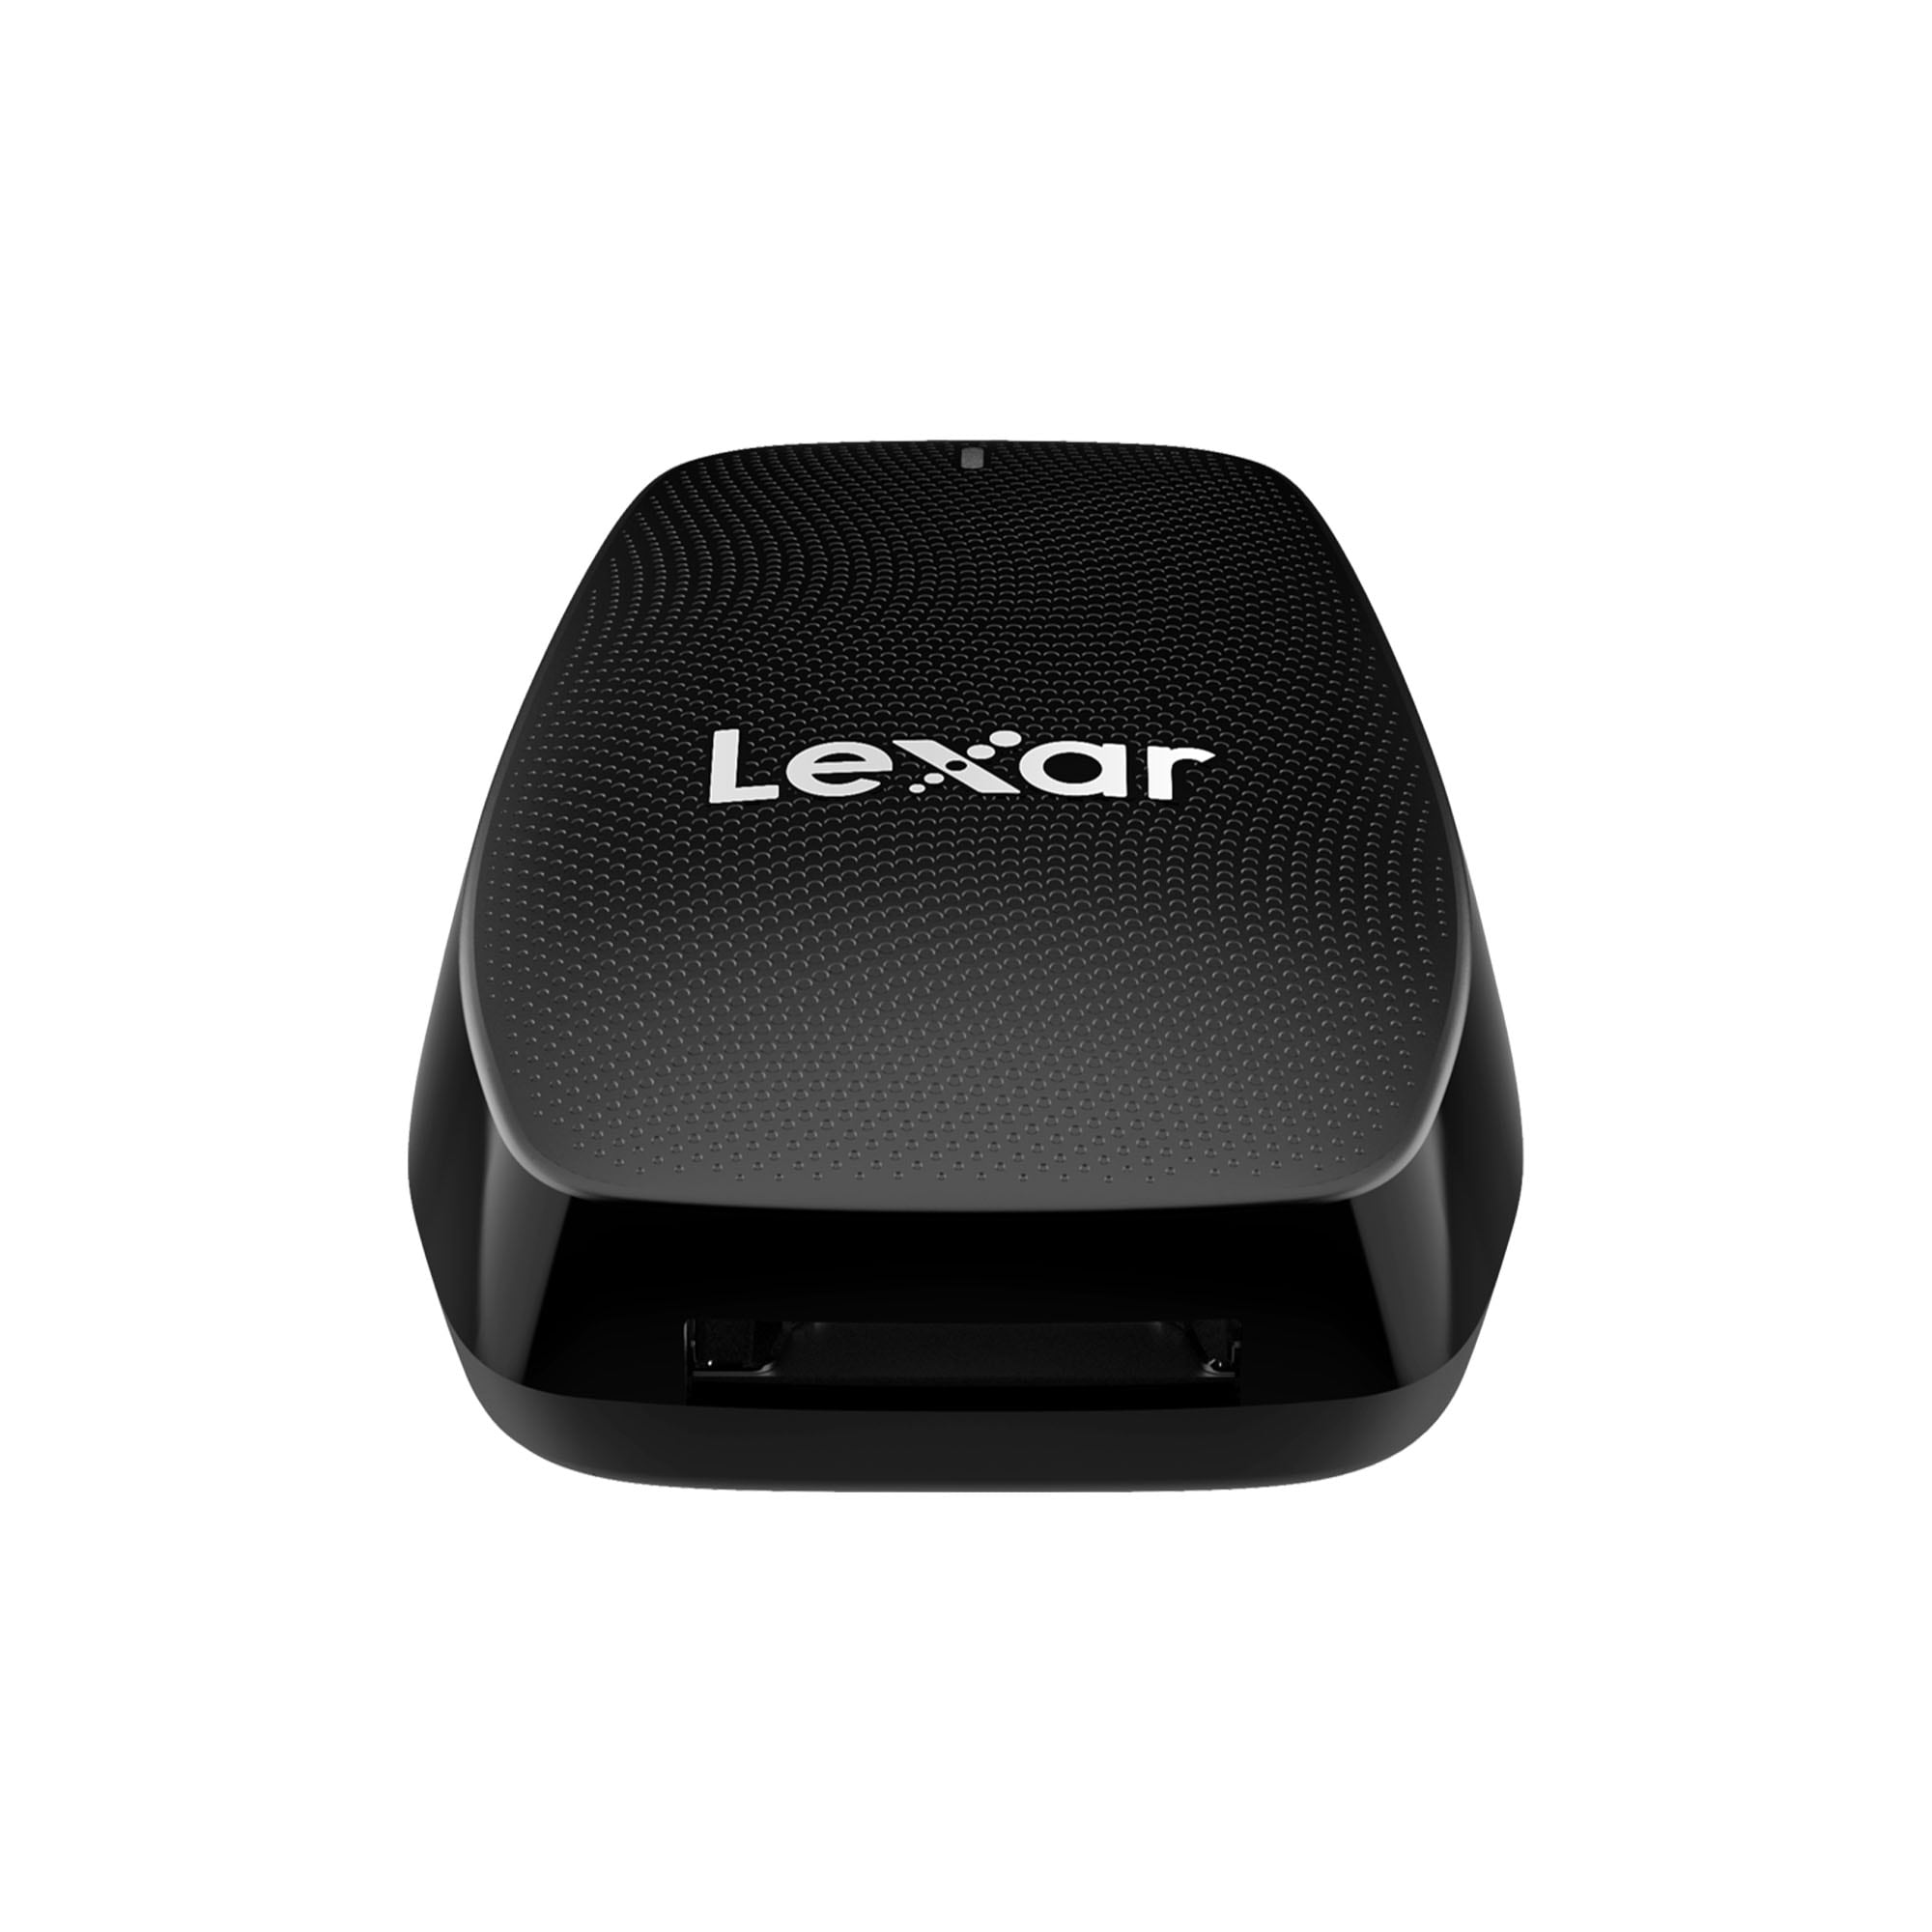 Lexar Cardreader Professional CFexpress Type B USB 3.2 Gen 2x2 Reader